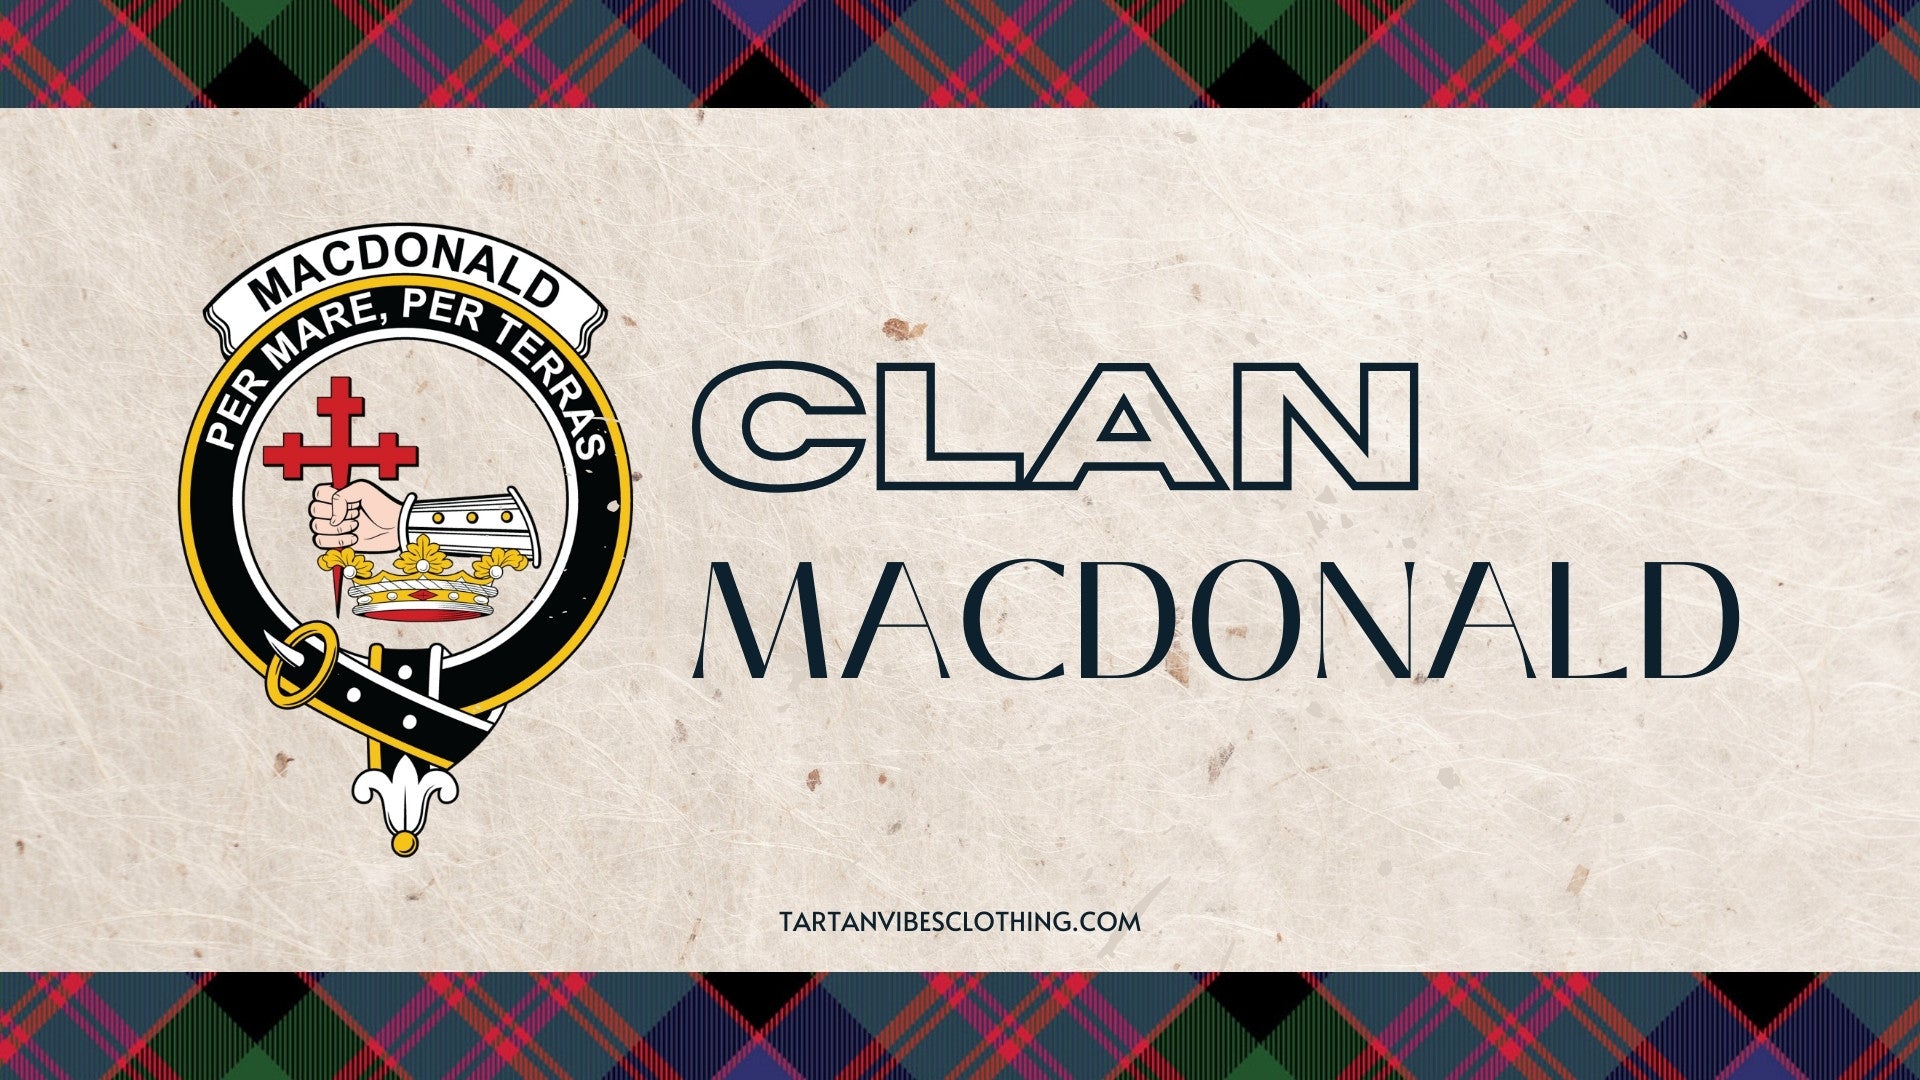 Clan MacDonald